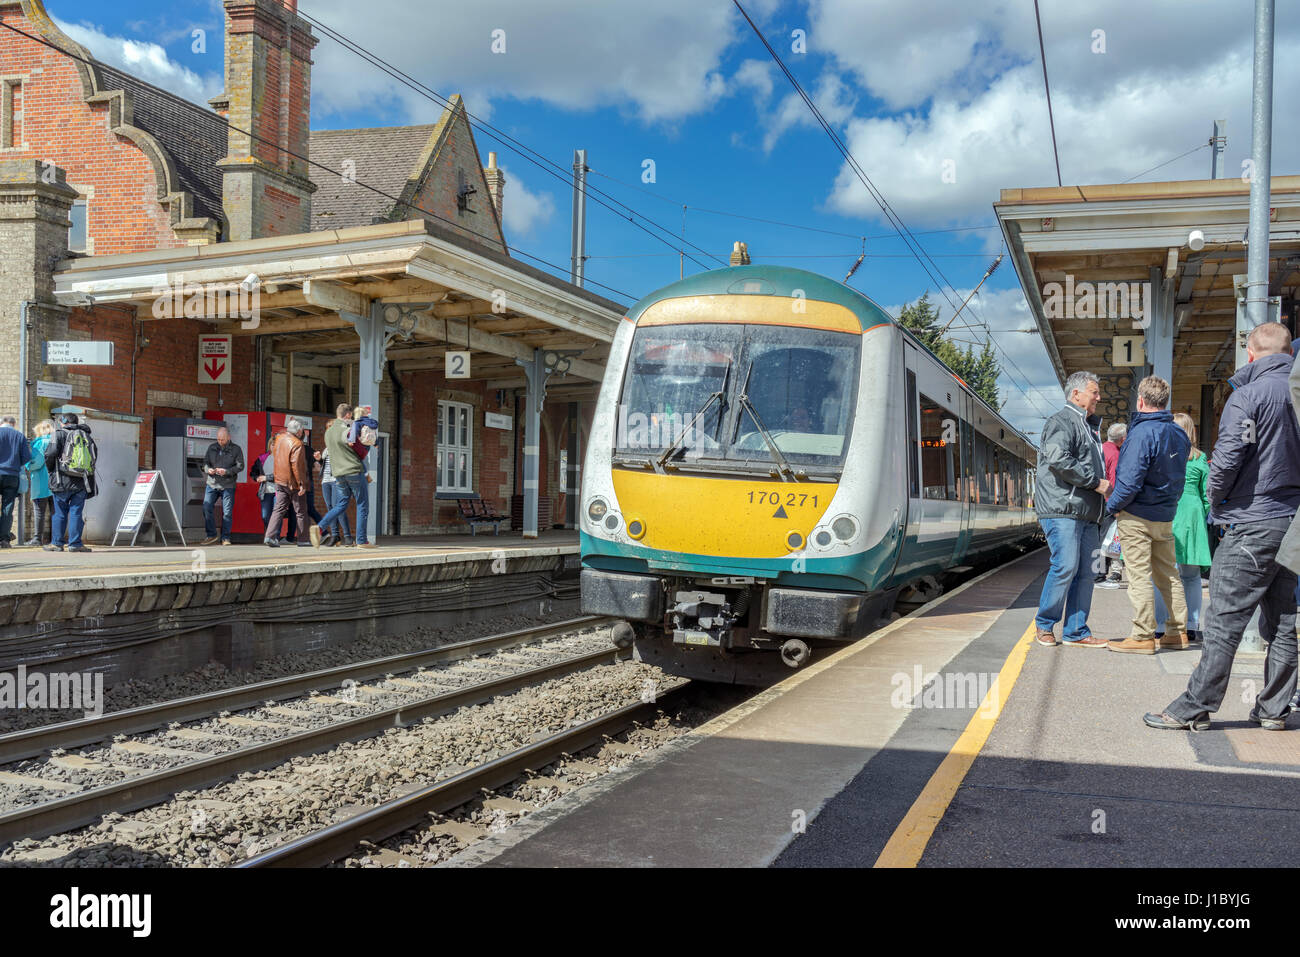 Class 170 DMU train station à Stowmarket dans le Suffolk, UK Banque D'Images